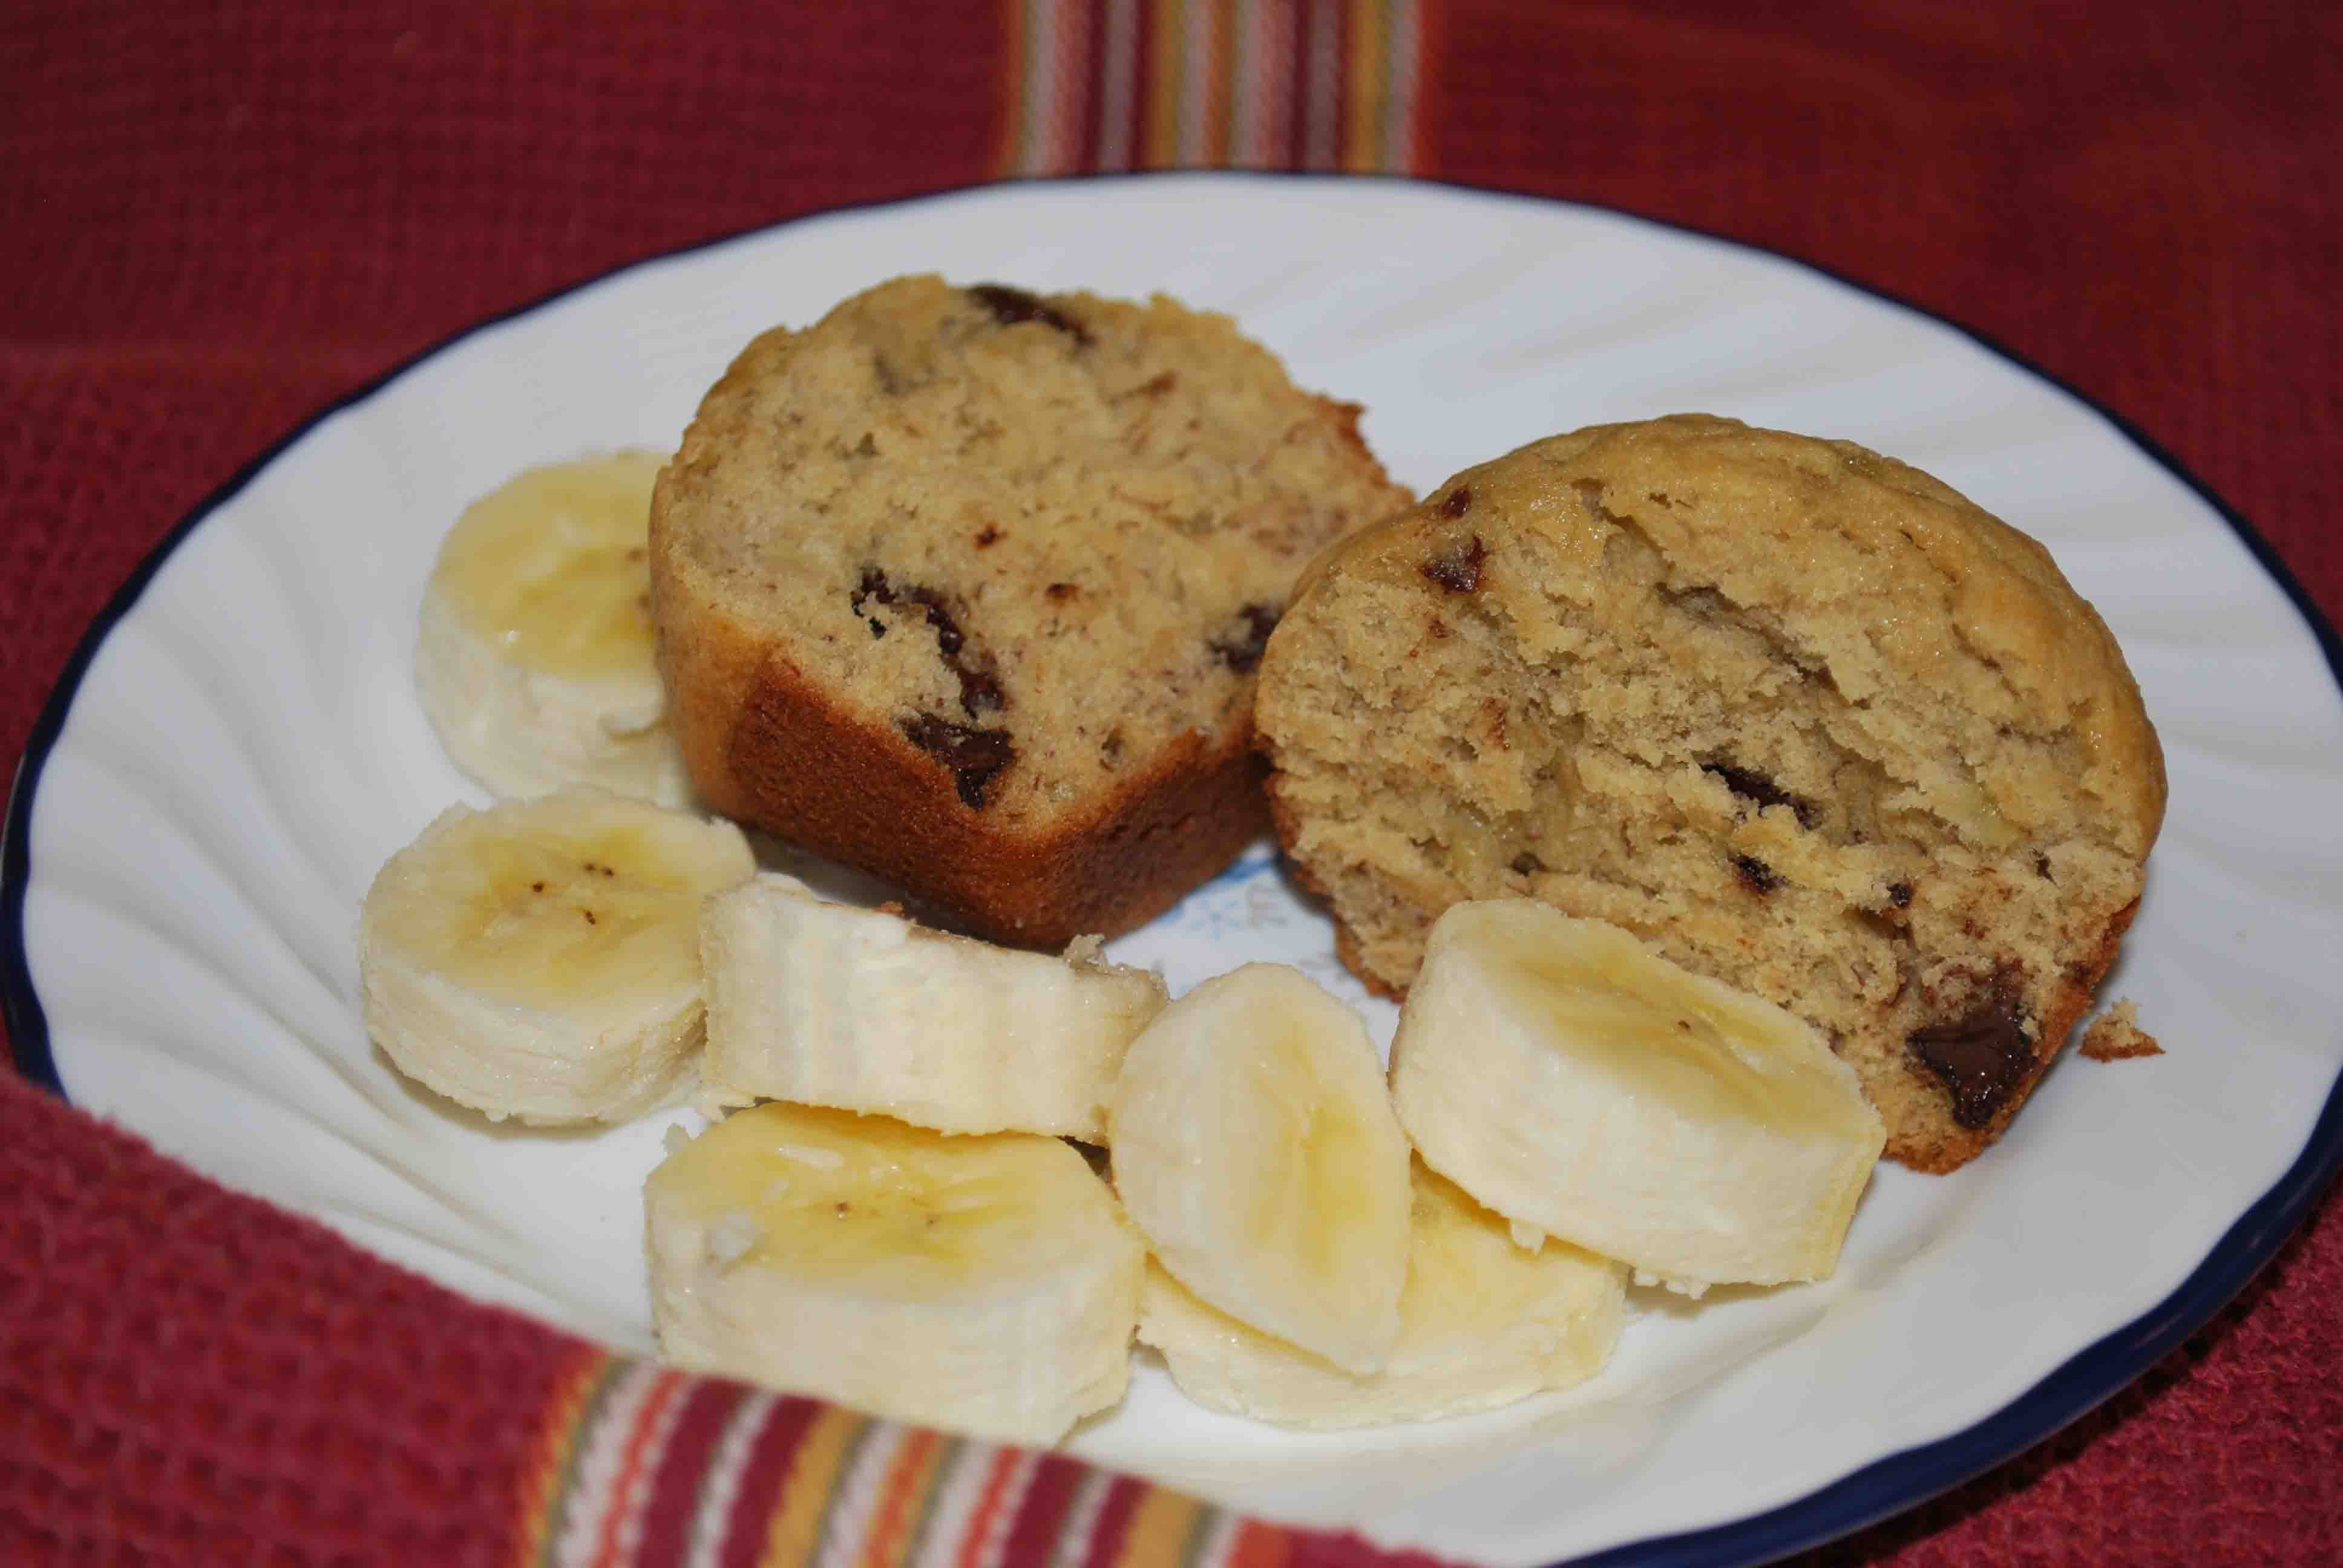 Banana chocolate chip muffins